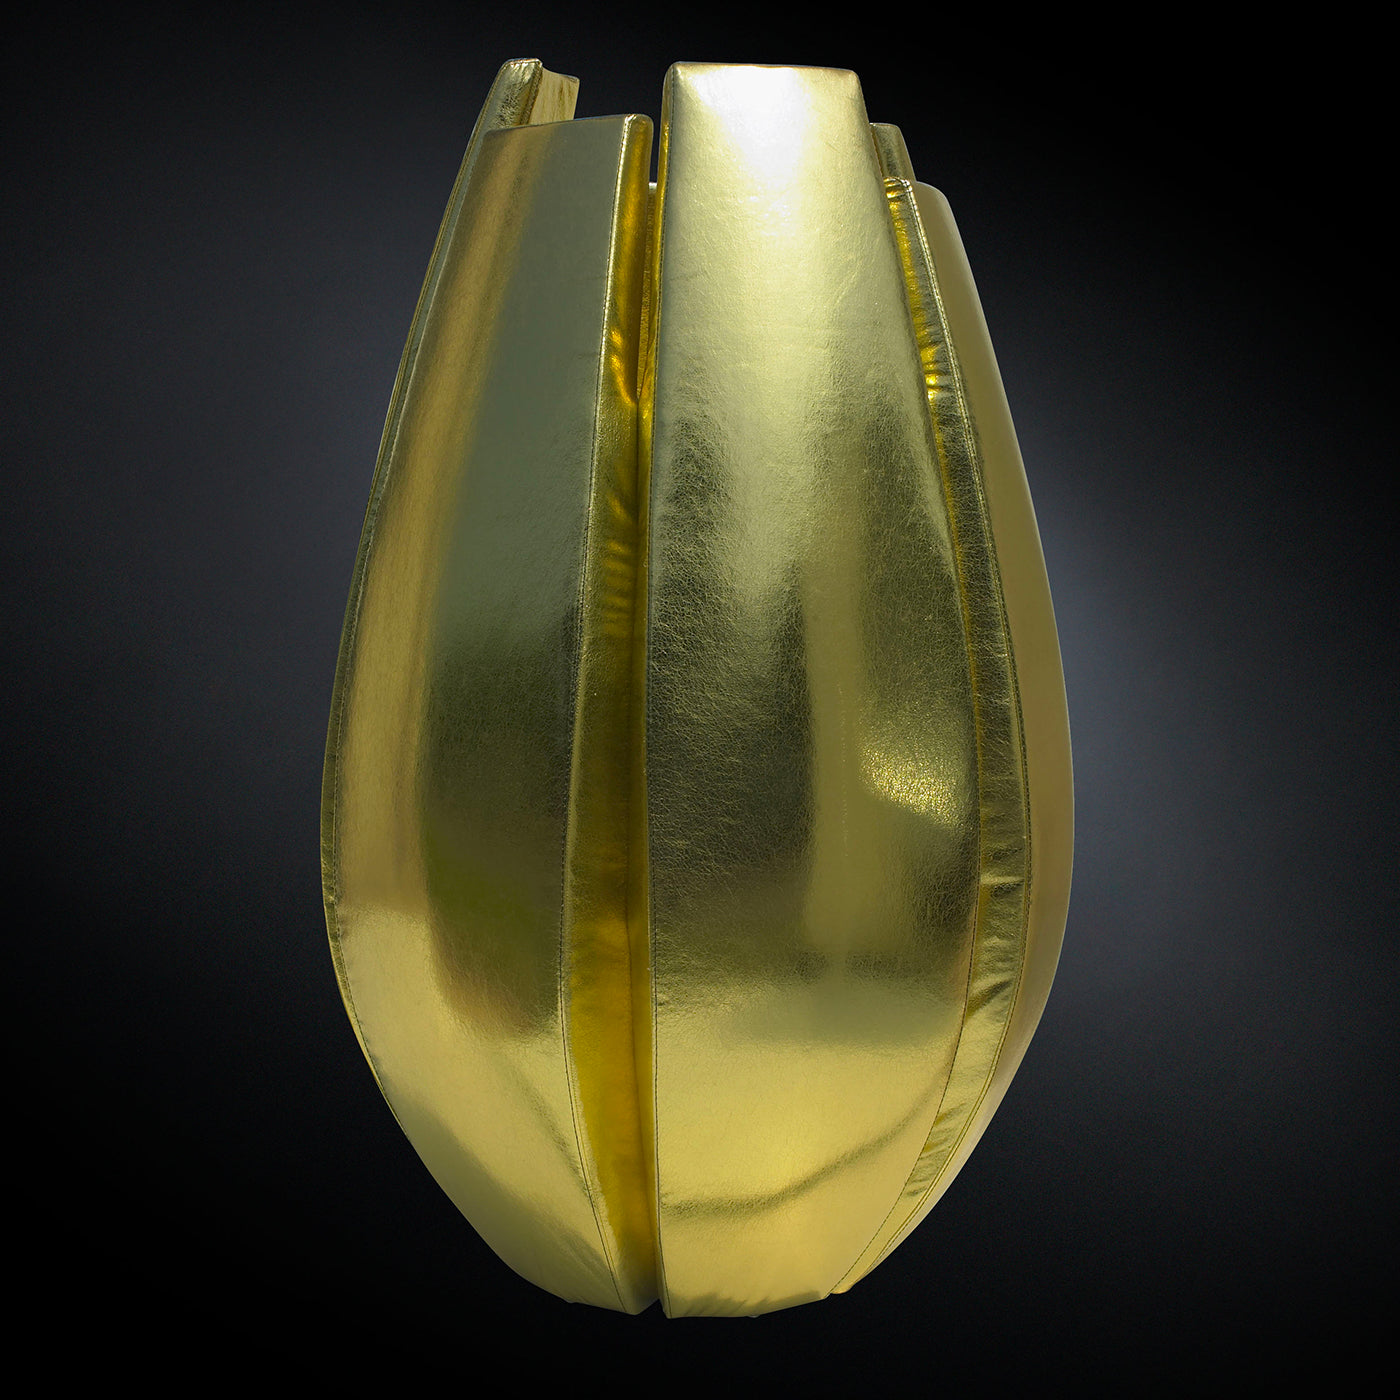 Vase en or à la citrouille - Vue alternative 2